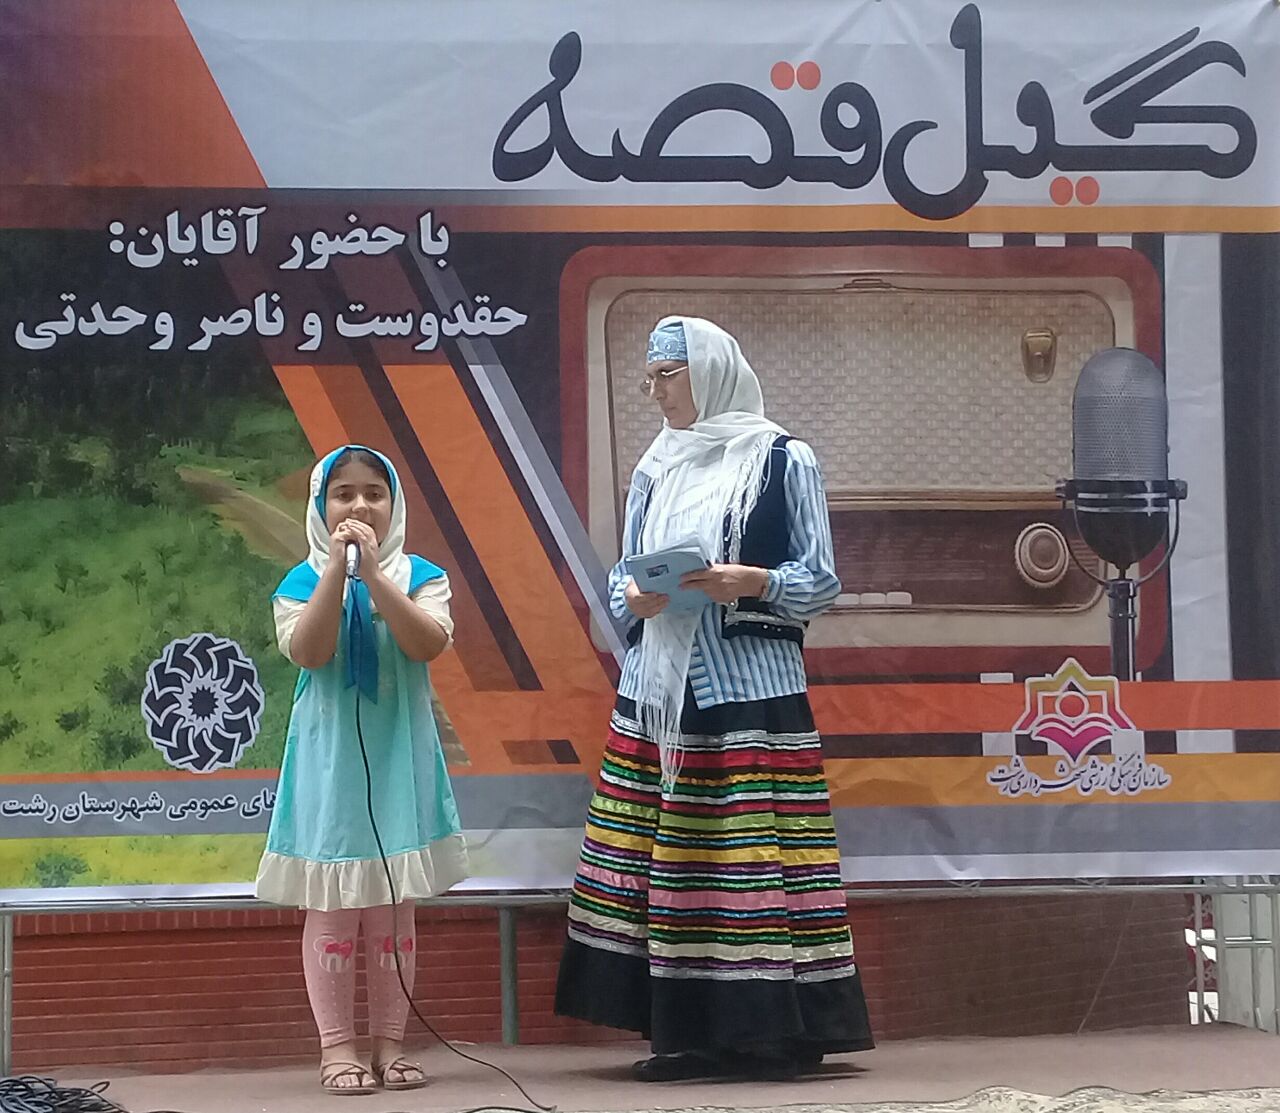 برگزاری جشنواره محلی گیله قصه در بوستان سبزه میدان رشت